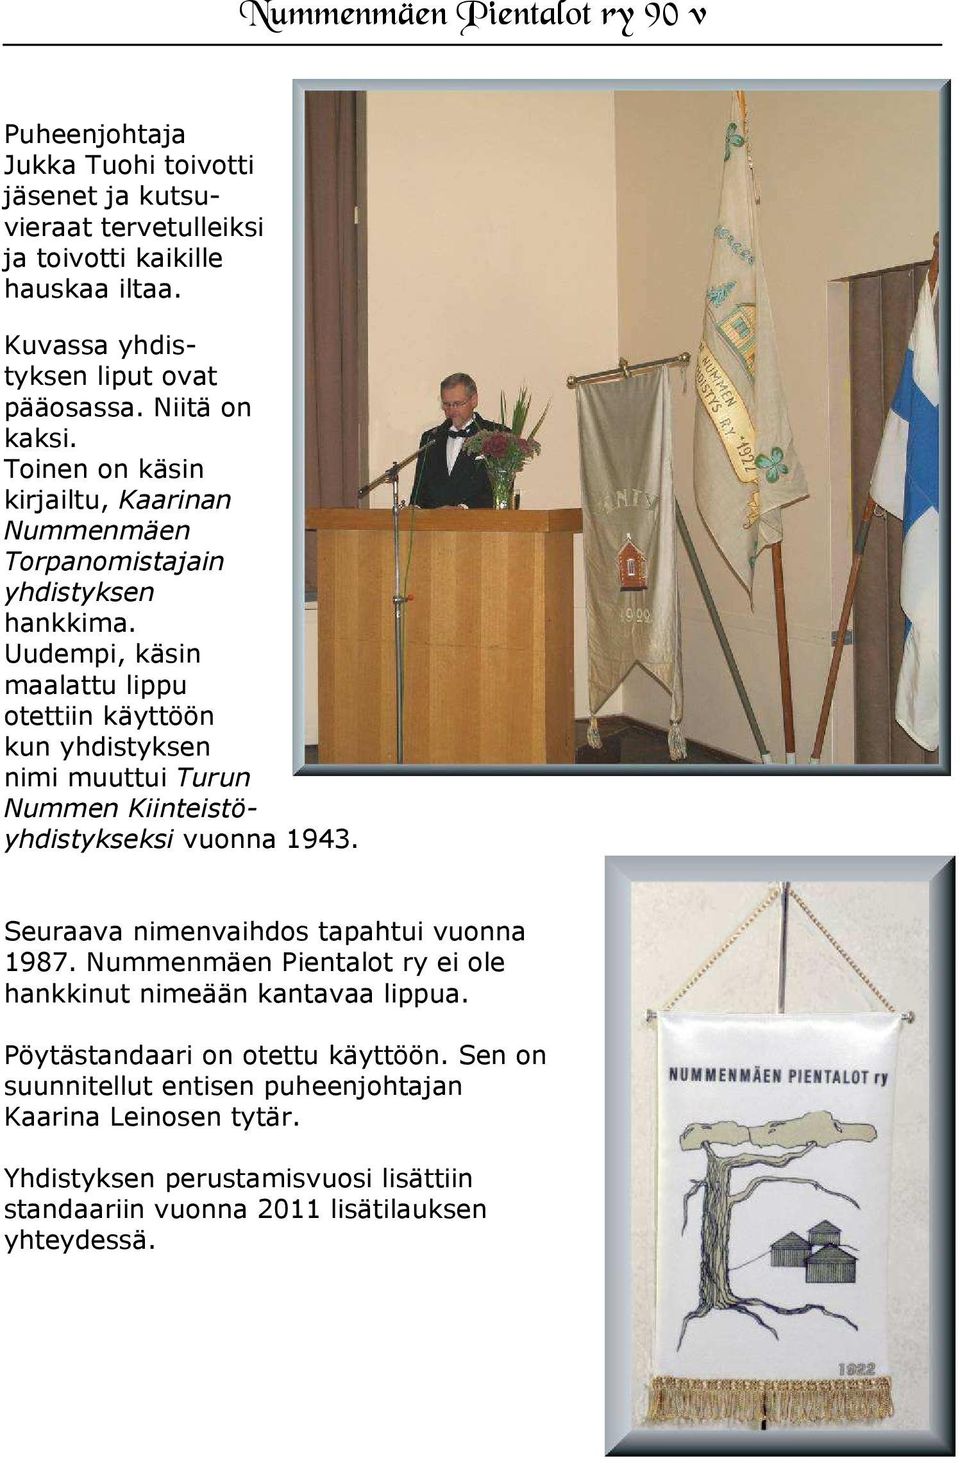 Uudempi, käsin maalattu lippu otettiin käyttöön kun yhdistyksen nimi muuttui Turun Nummen Kiinteistöyhdistykseksi vuonna 1943. Seuraava nimenvaihdos tapahtui vuonna 1987.